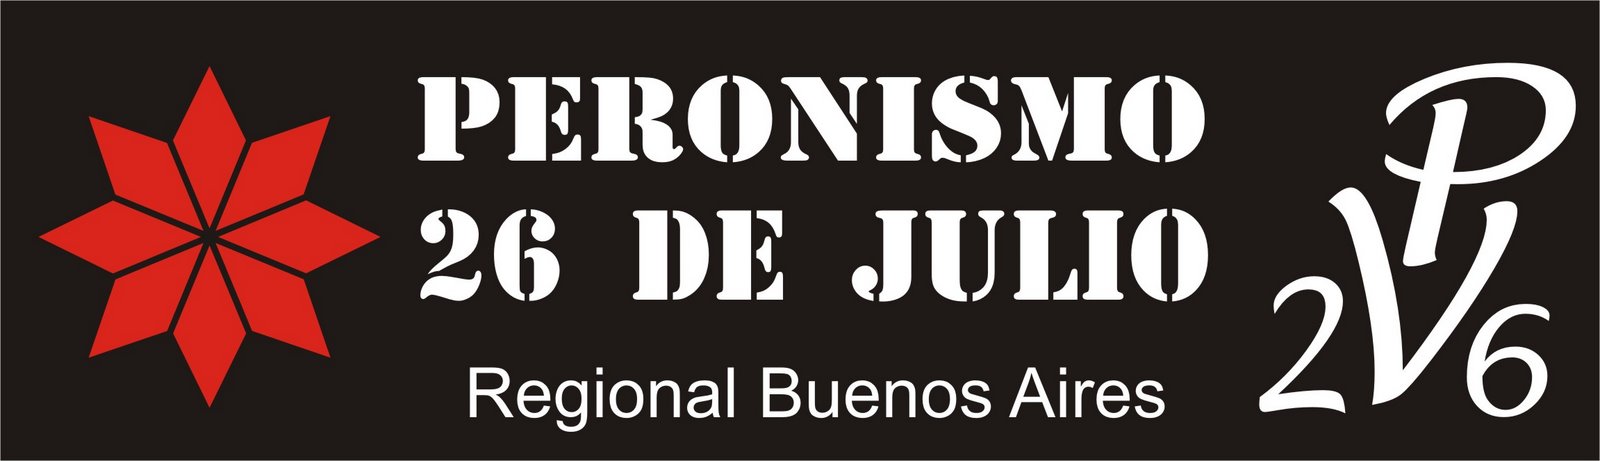 Peronismo 26 de Julio - Regional Bs As